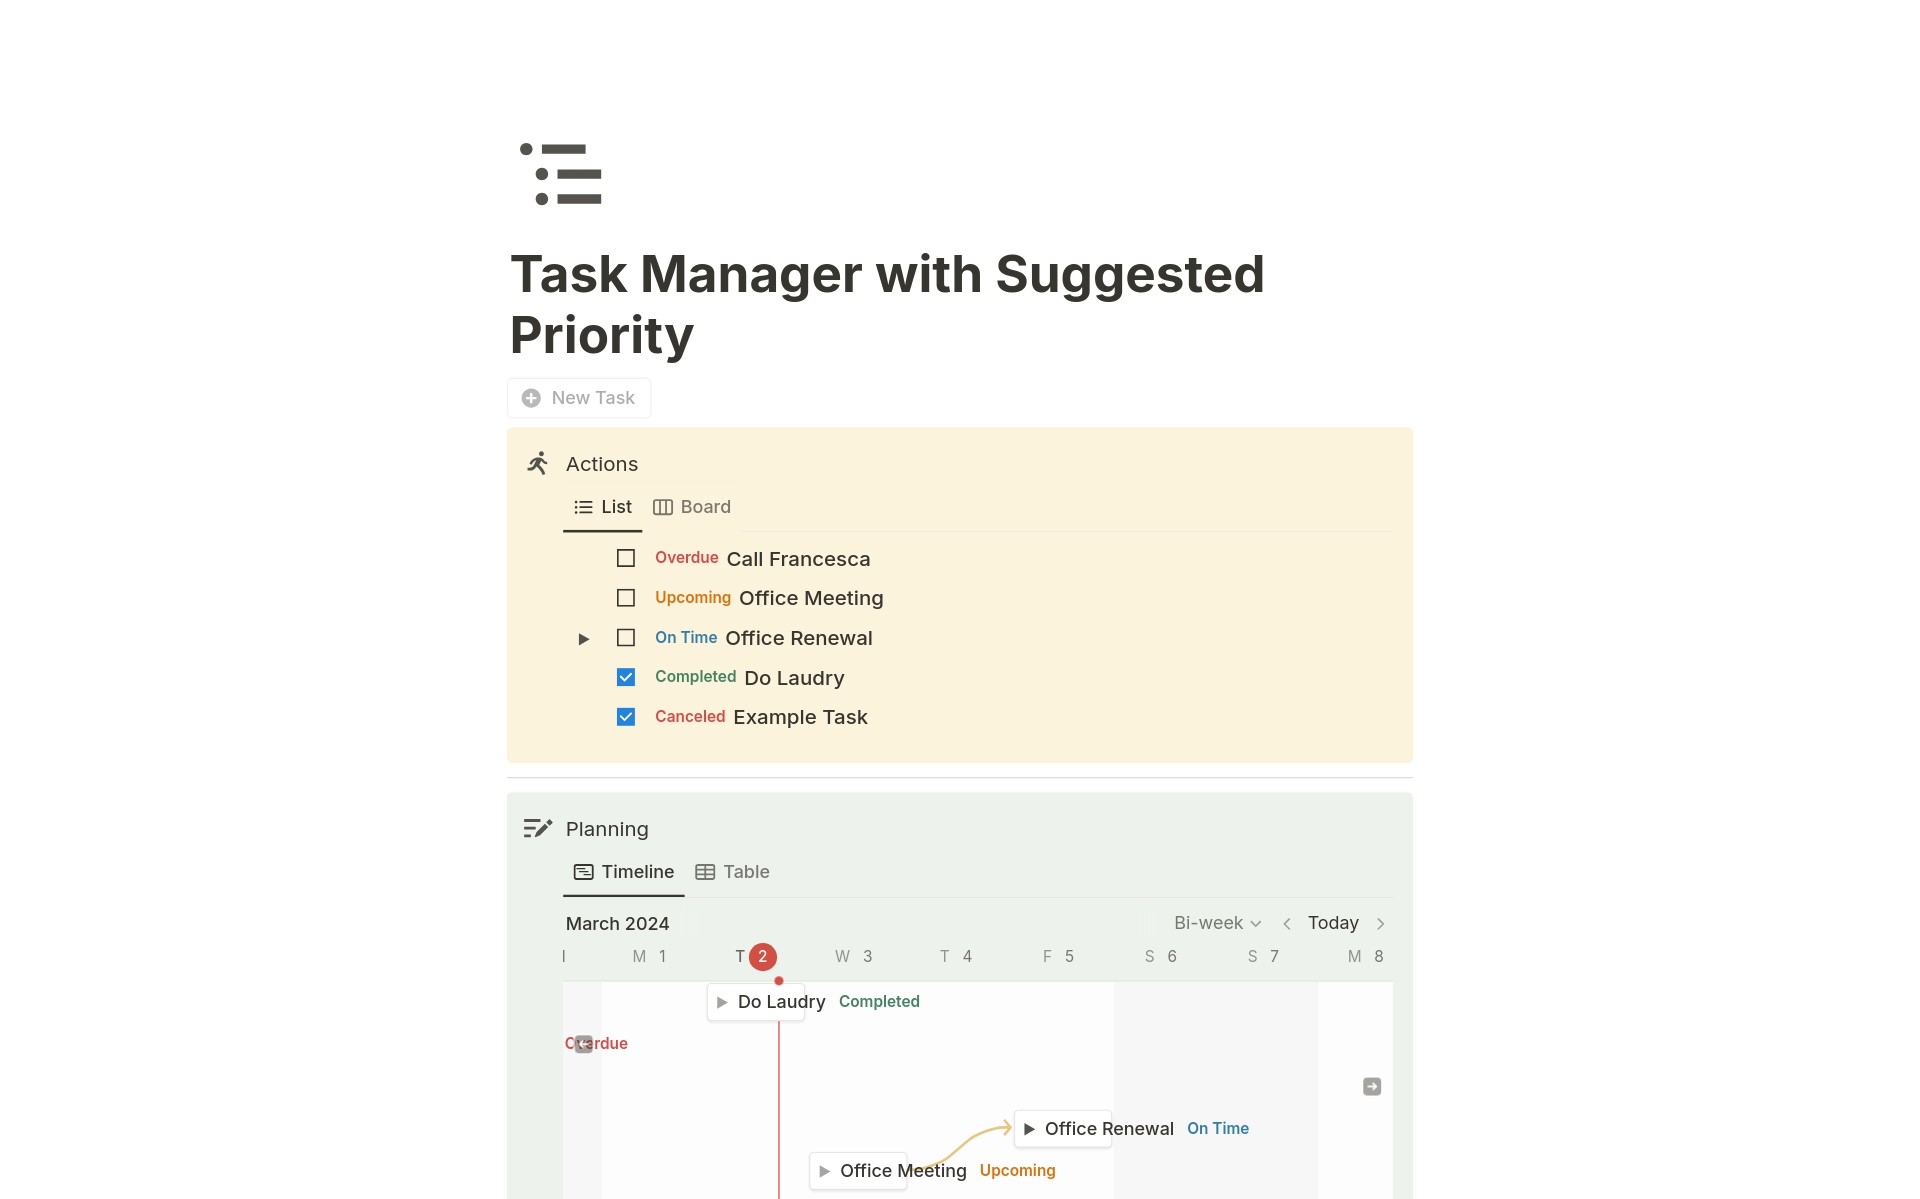 Uma prévia do modelo para Task Manager with Suggested Priority